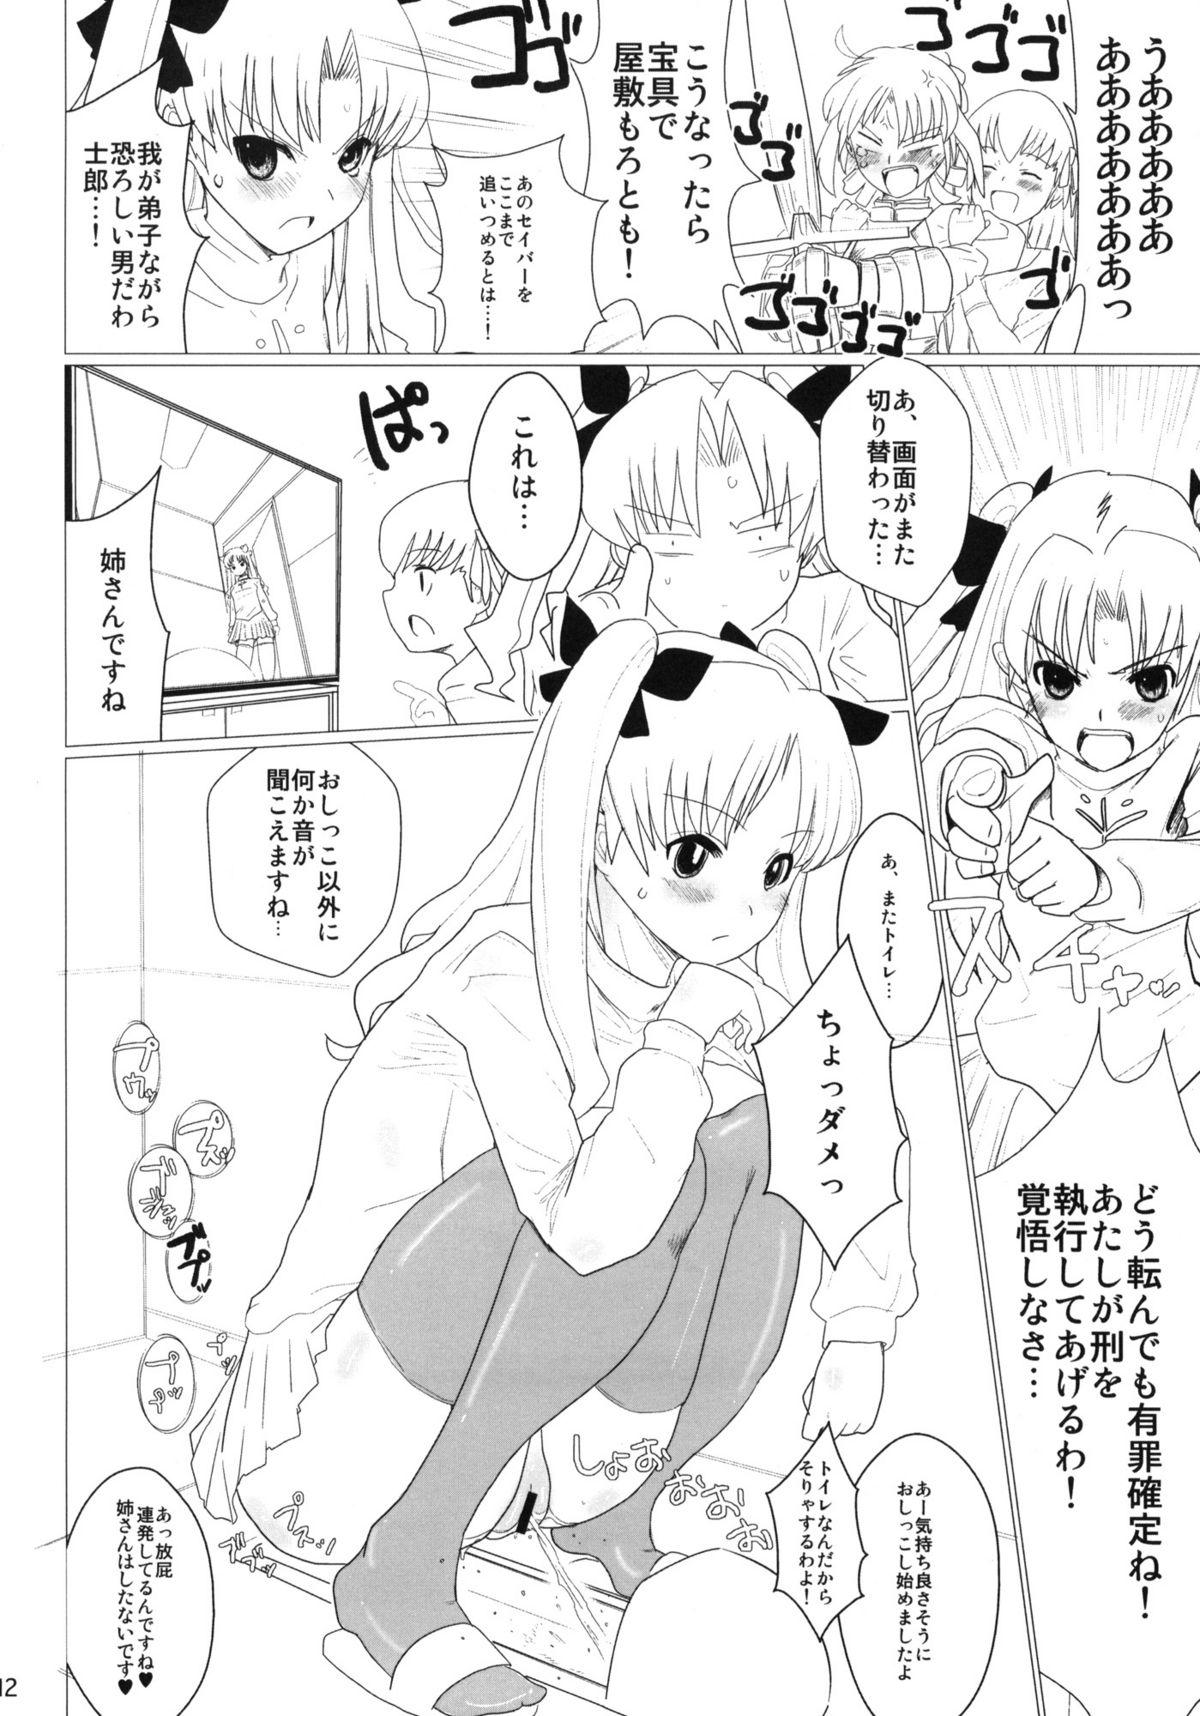 Teen Sex Itanshinmon Zettai Shikei - Fate stay night Freeporn - Page 11